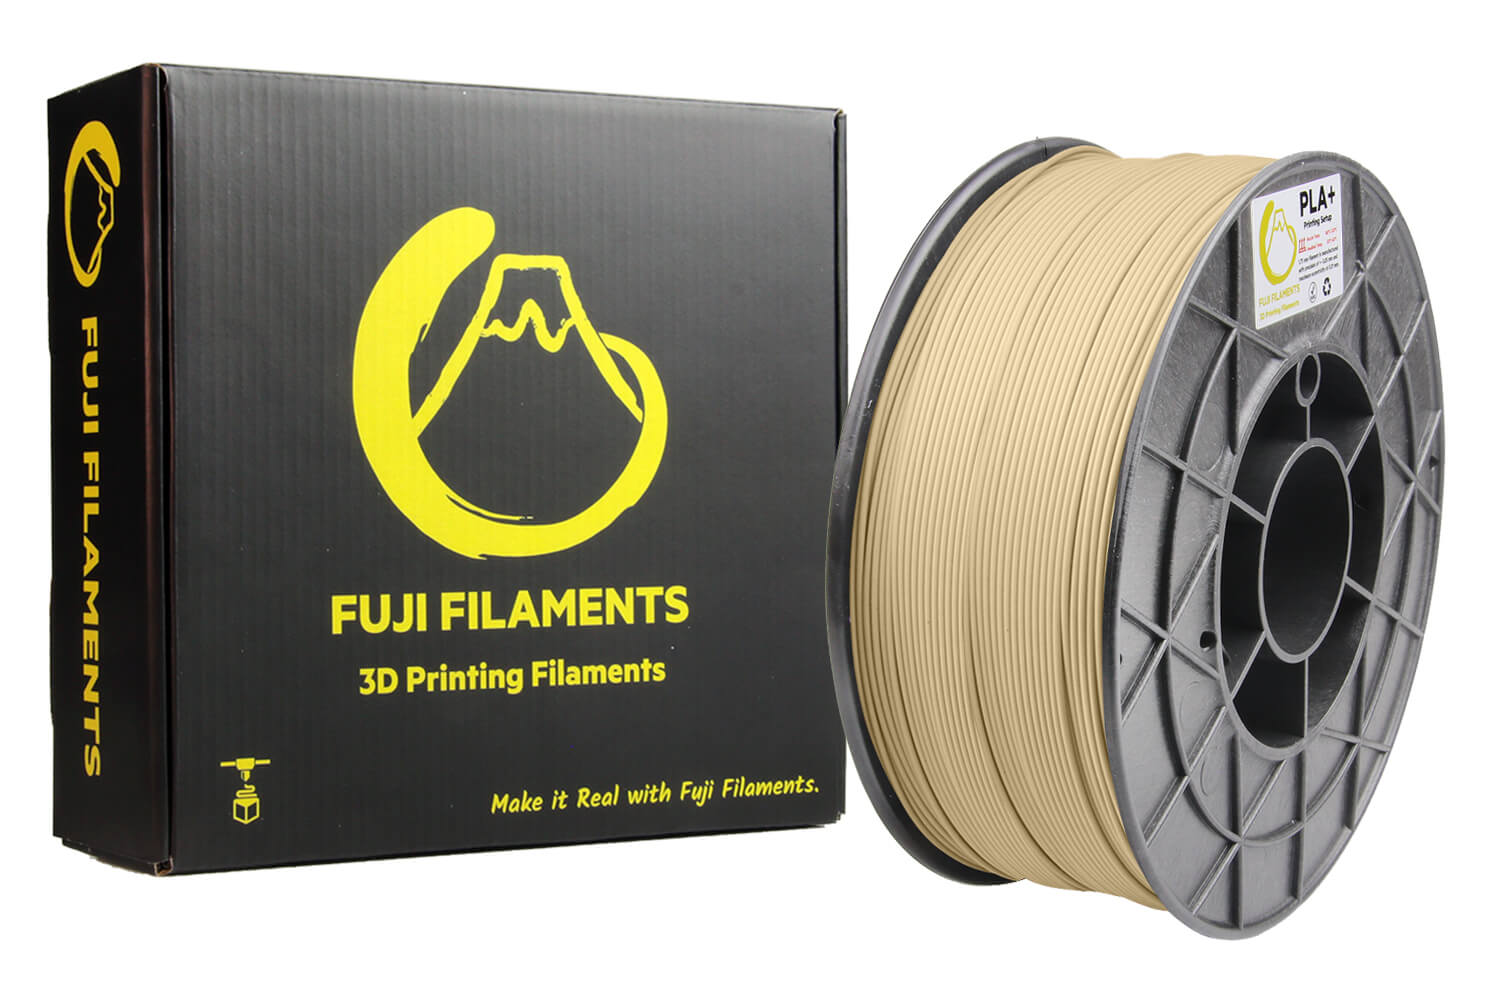 fuji-ten-pla+-filament-1kg-1.jpg (125 KB)